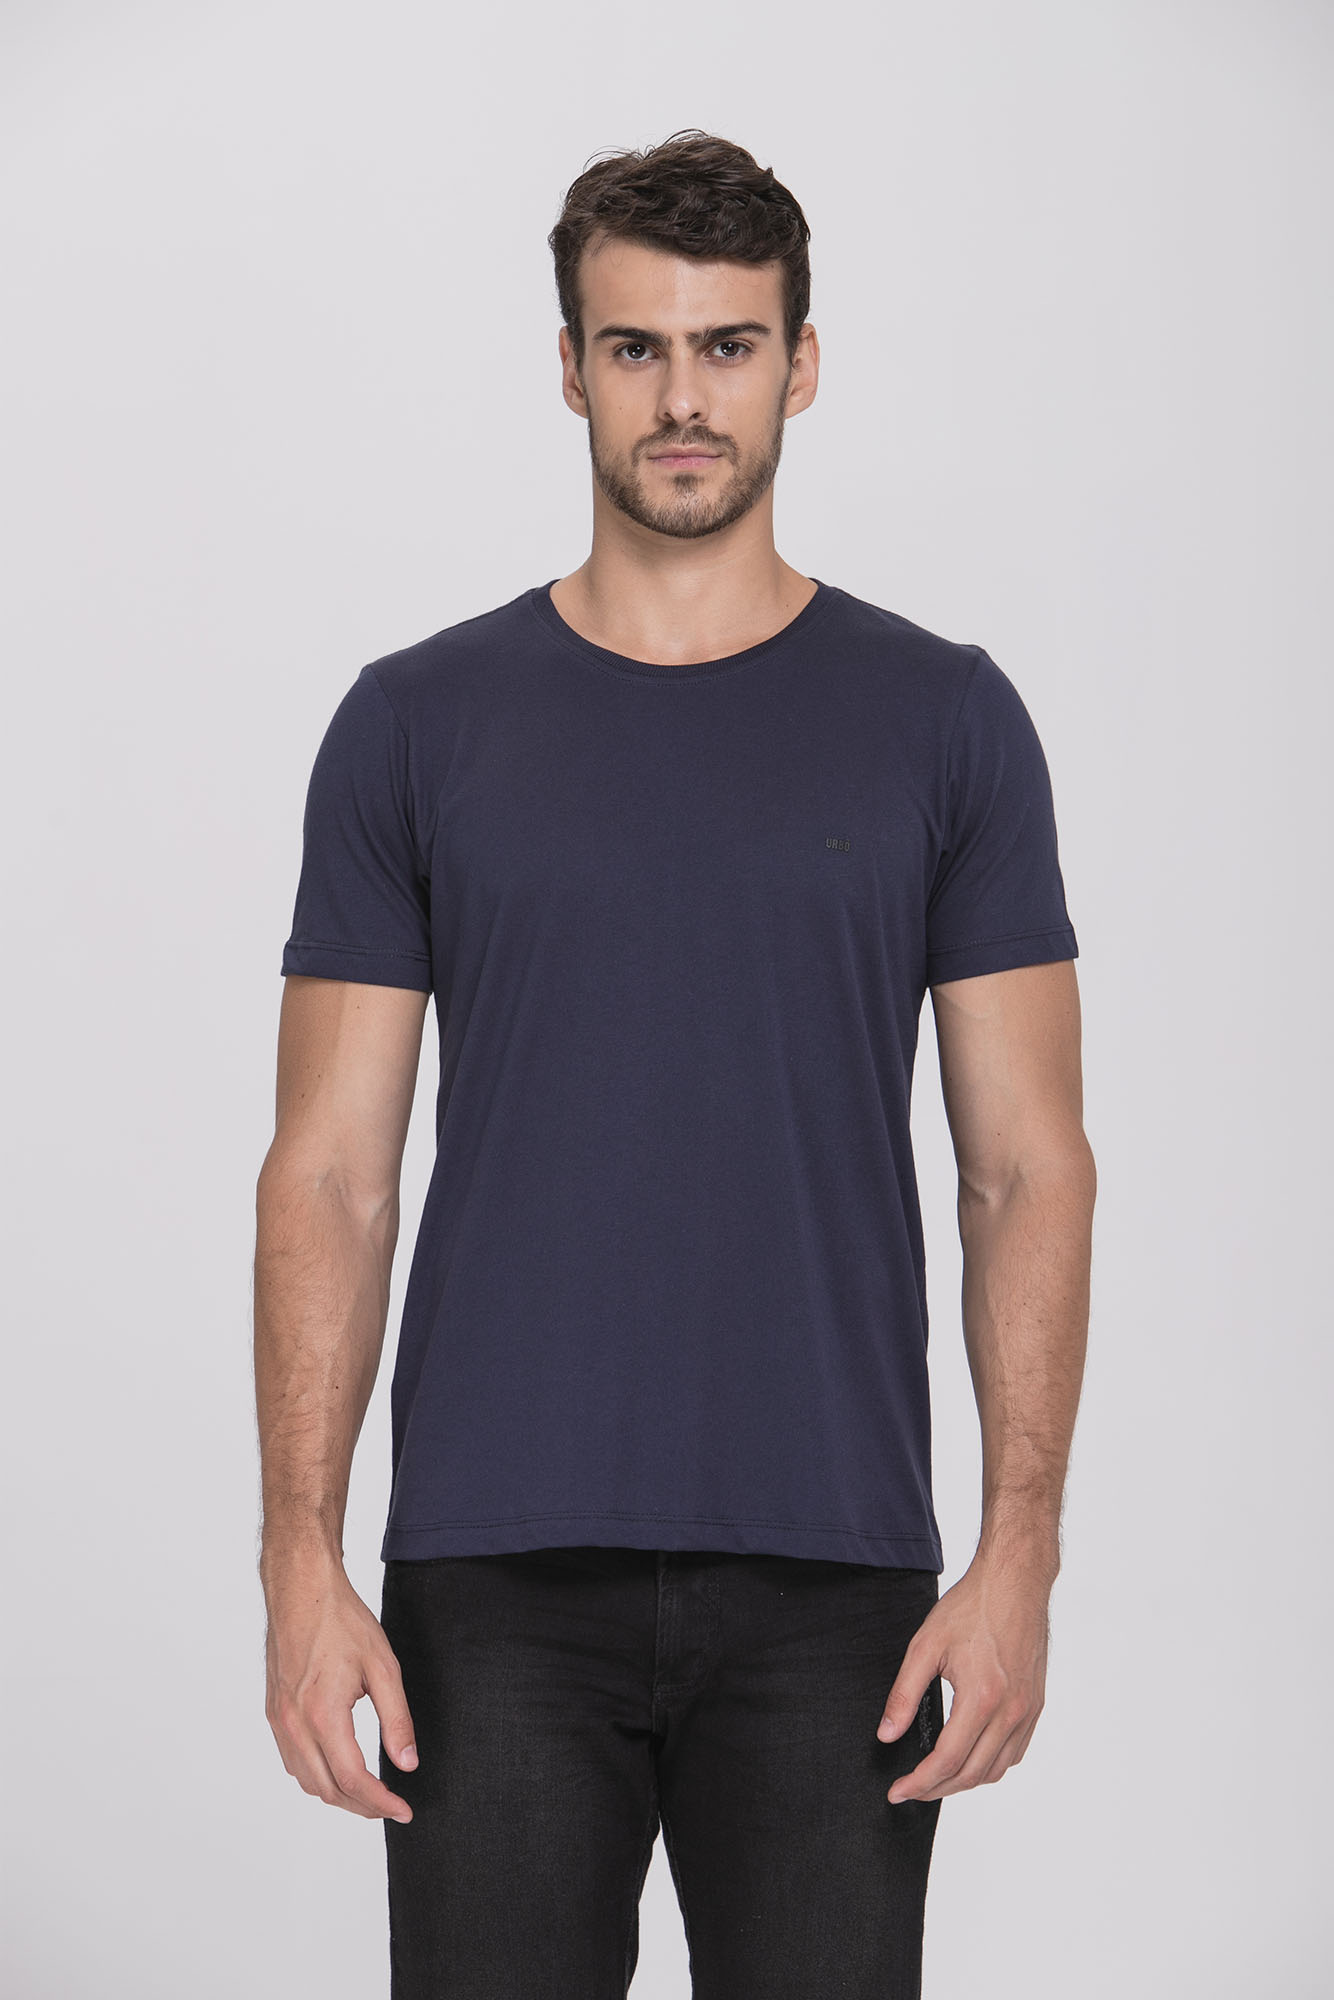 Camiseta Cotton Egypt Azul/Preto